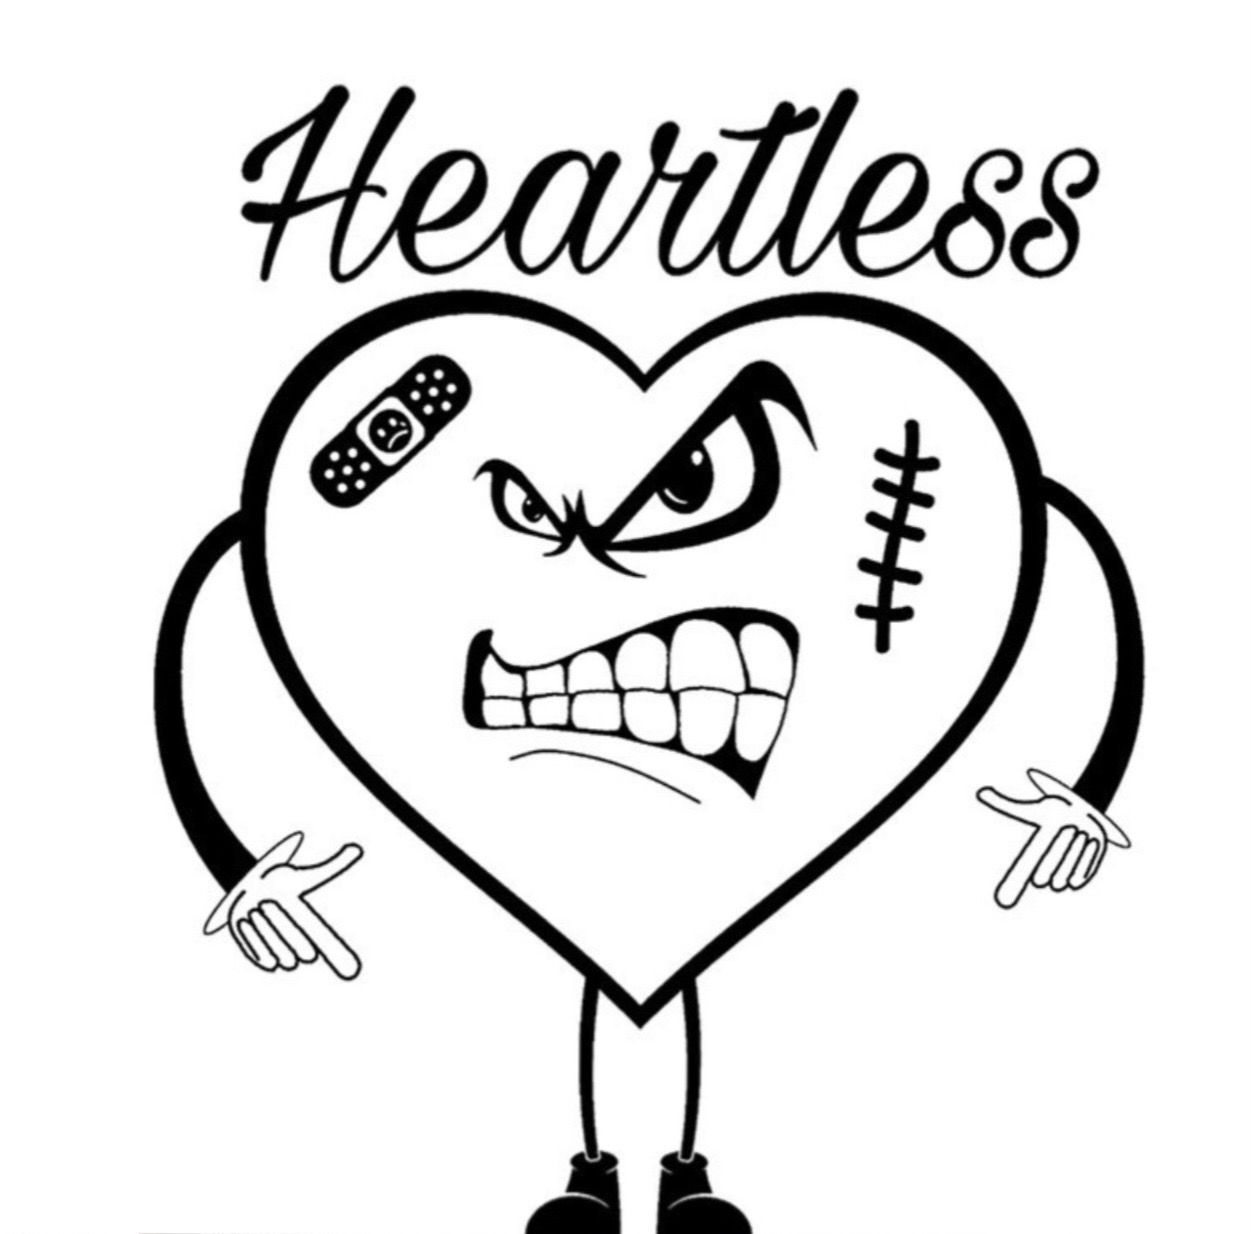 Heartless Gear